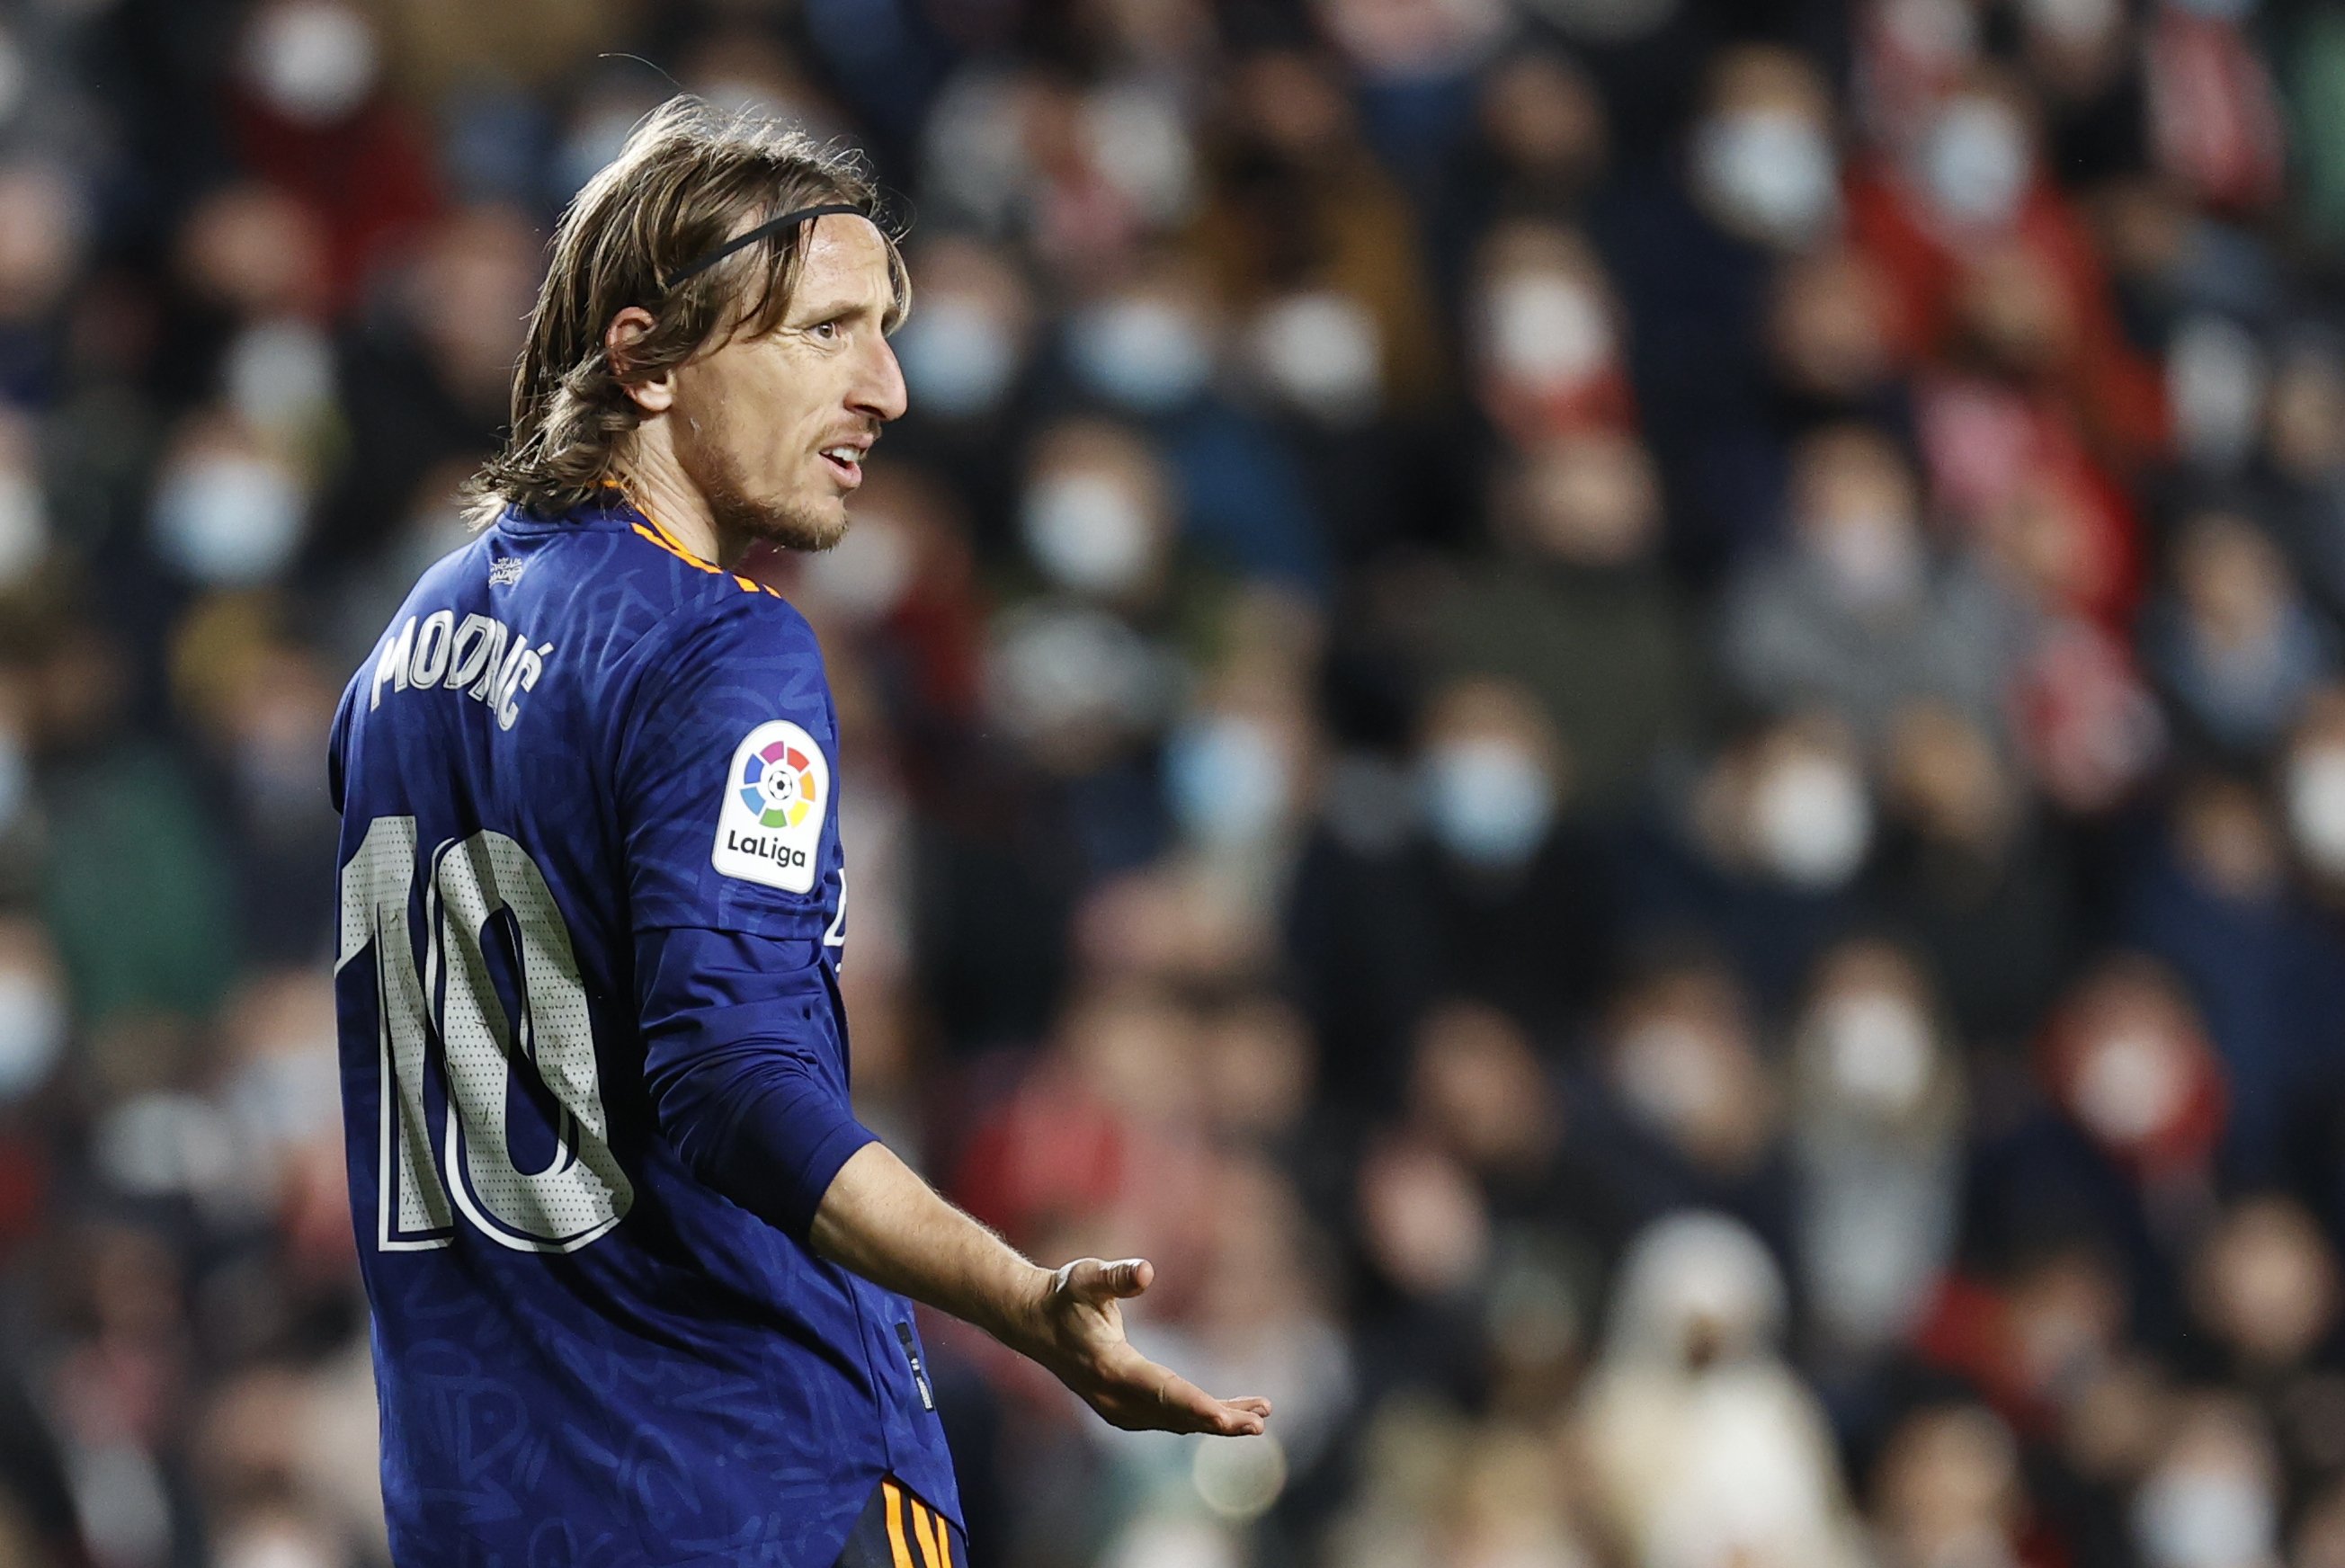 Serà el substitut estrella de Modric el 2023 i el Reial Madrid ja s'ha assegurat una opció preferencial